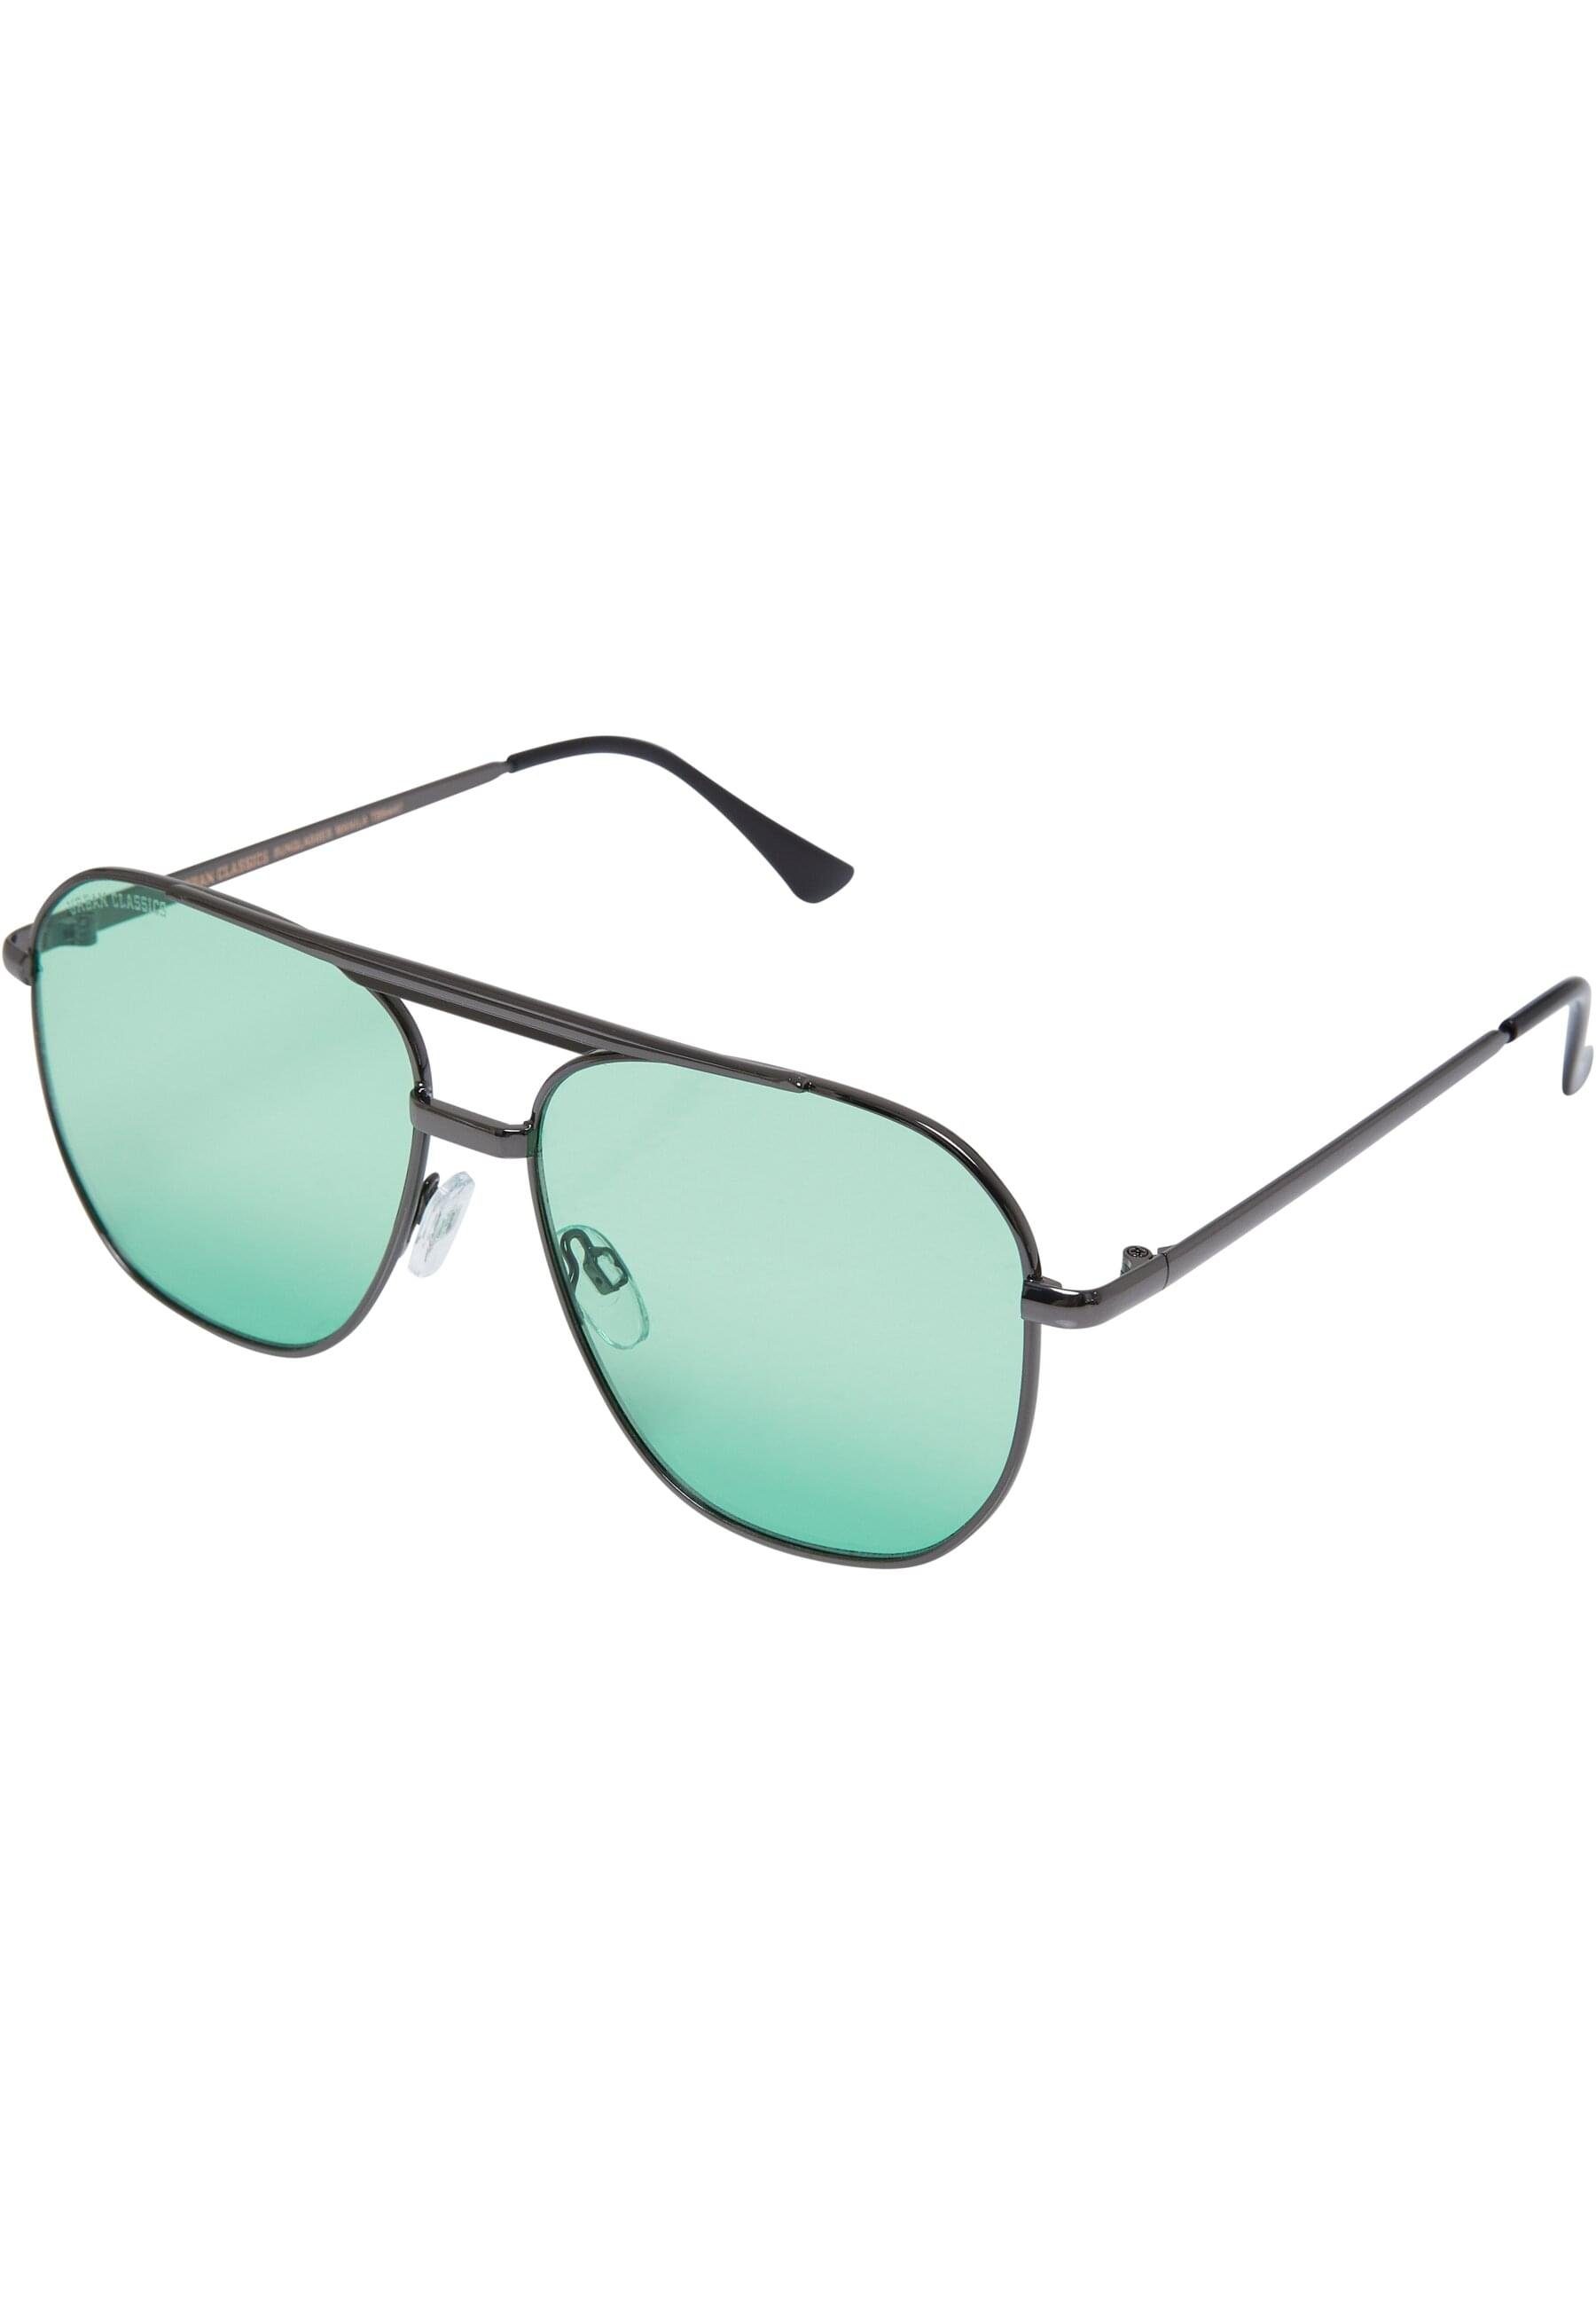 URBAN CLASSICS Sonnenbrille Unisex Sunglasses Manila gunmetal/leaf